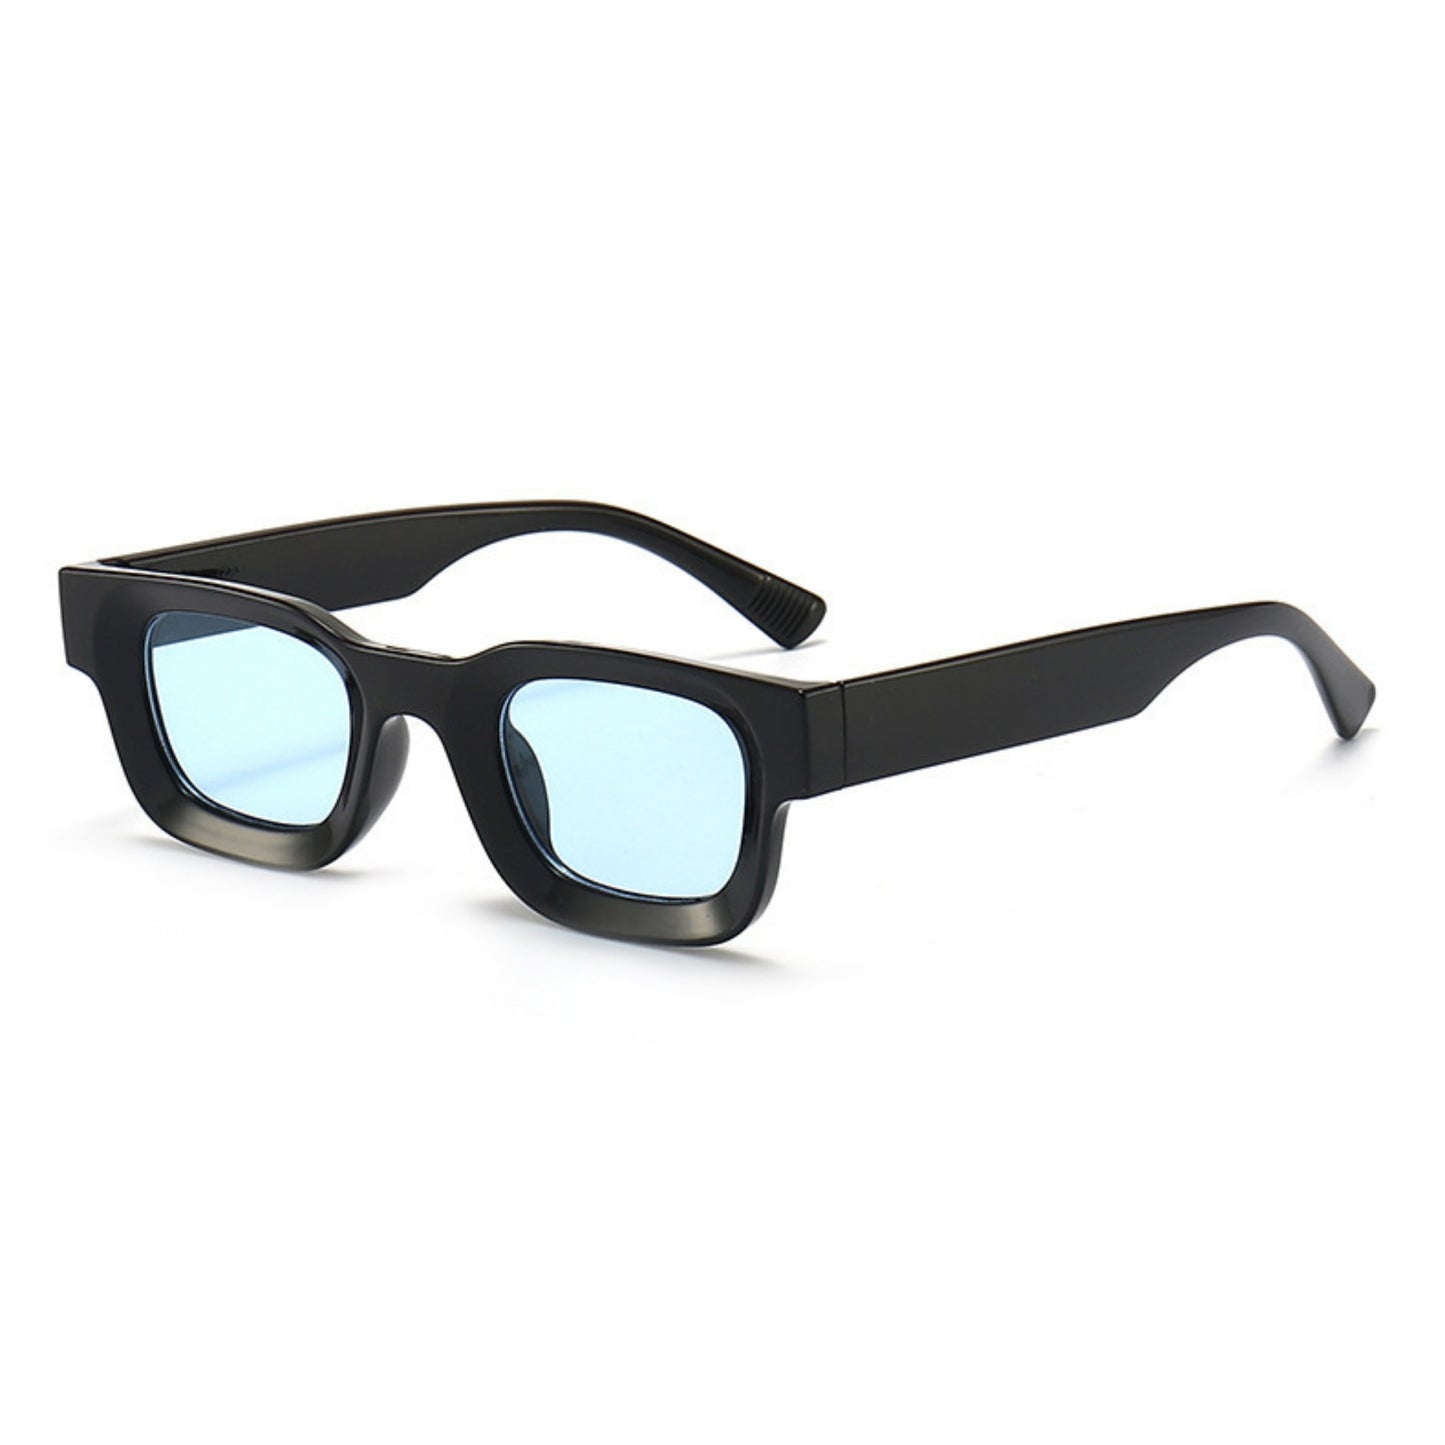 Τετράγωνα Γυαλιά ηλίου Taf από την Exposure Sunglasses με προστασία UV400 με μαύρο σκελετό και μπλε φακό.Πλαινή όψη.